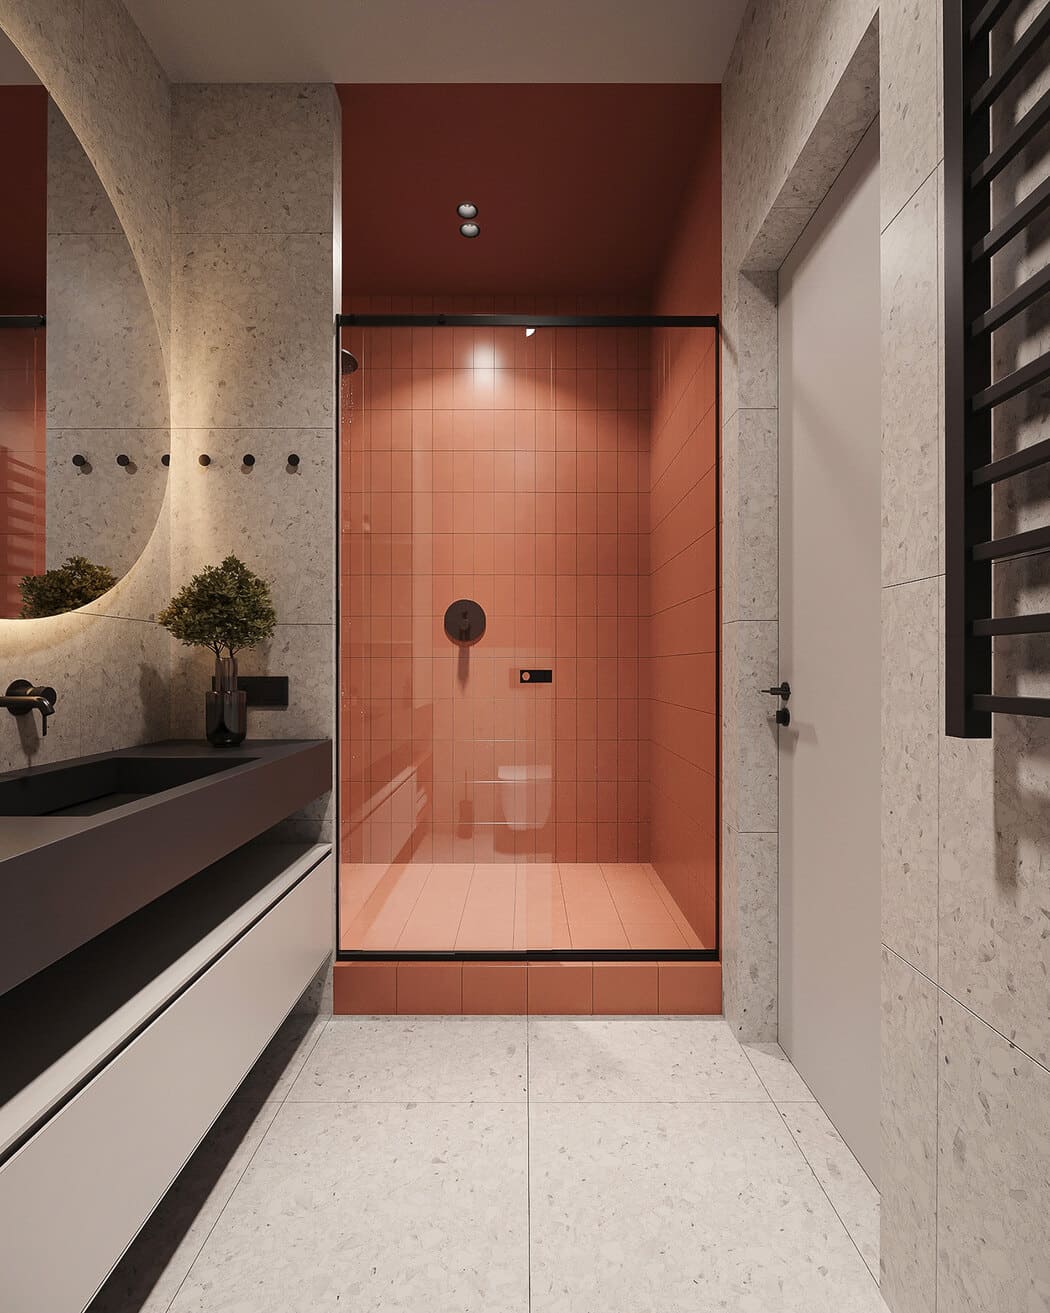 Минималистичная квартира с контрастными акцентами в стиле минимализма, ванная, фото 7